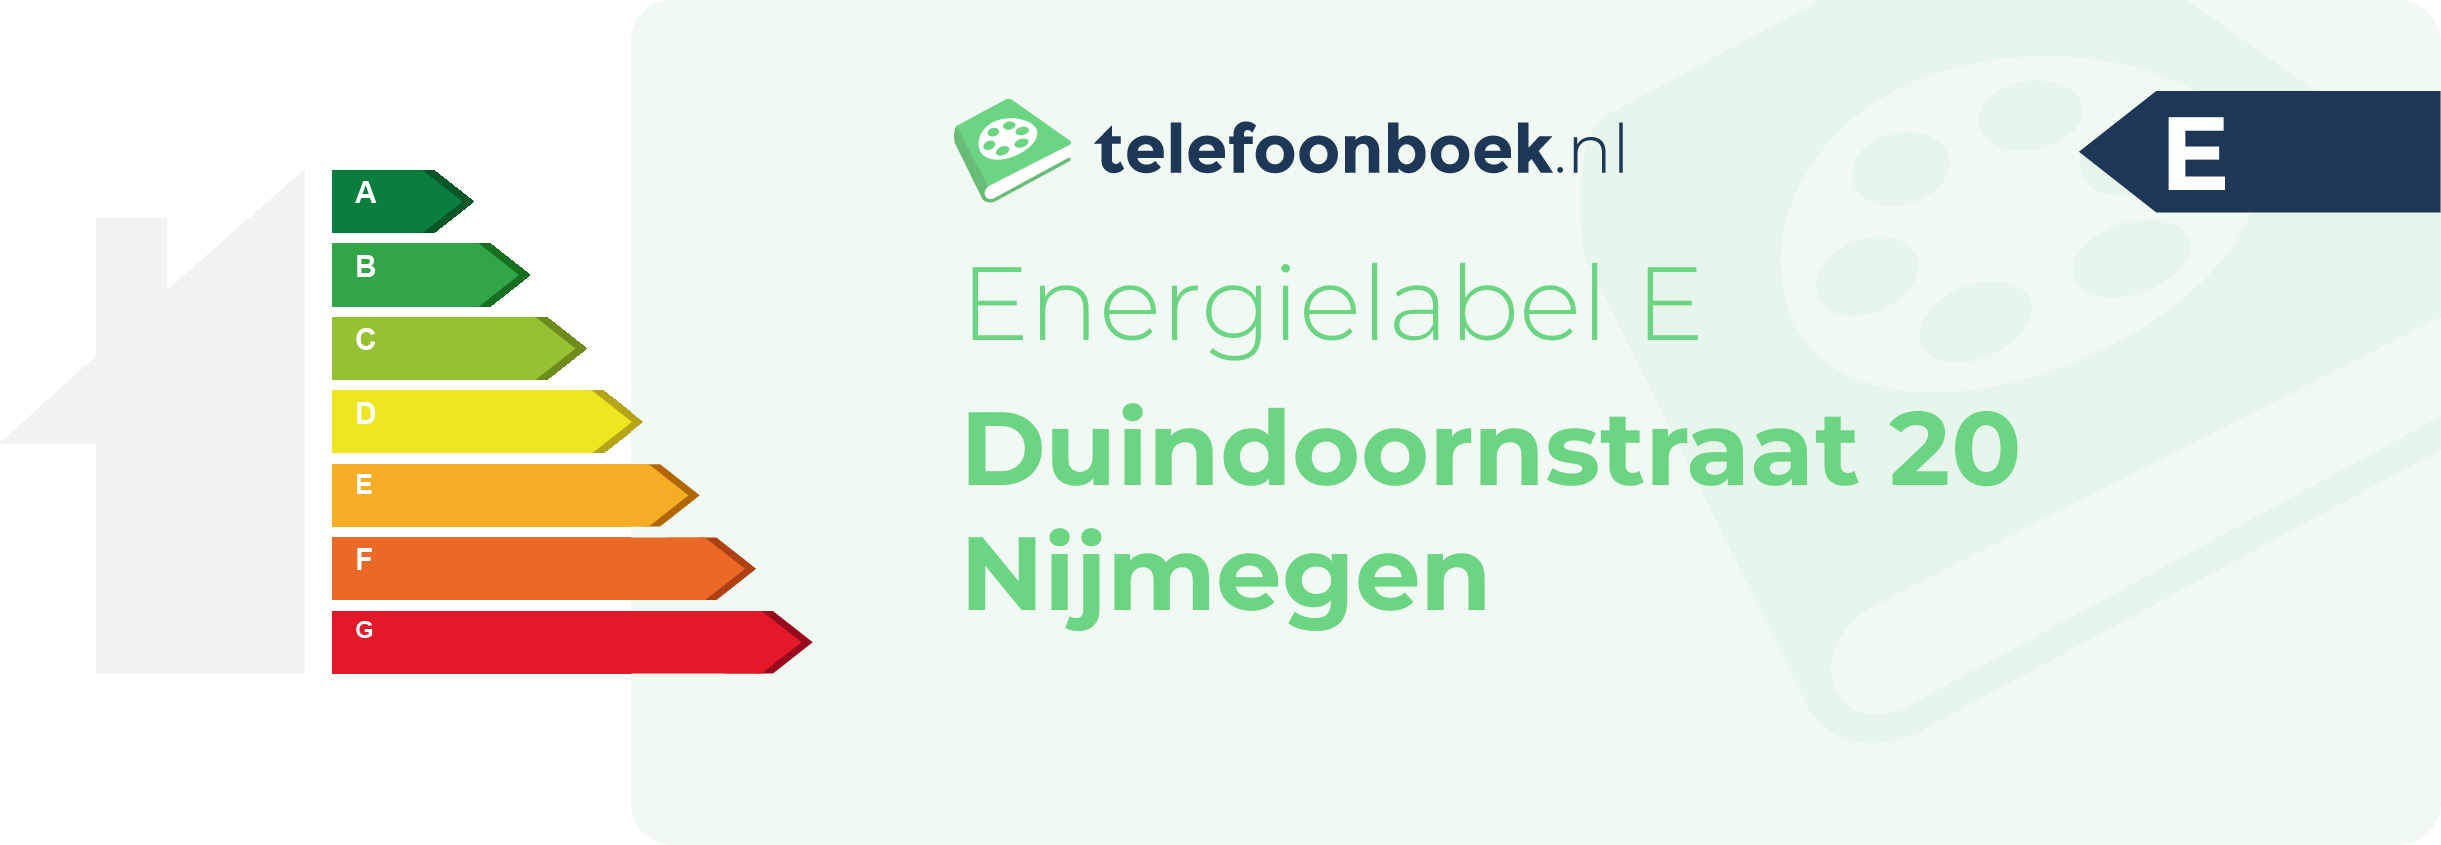 Energielabel Duindoornstraat 20 Nijmegen